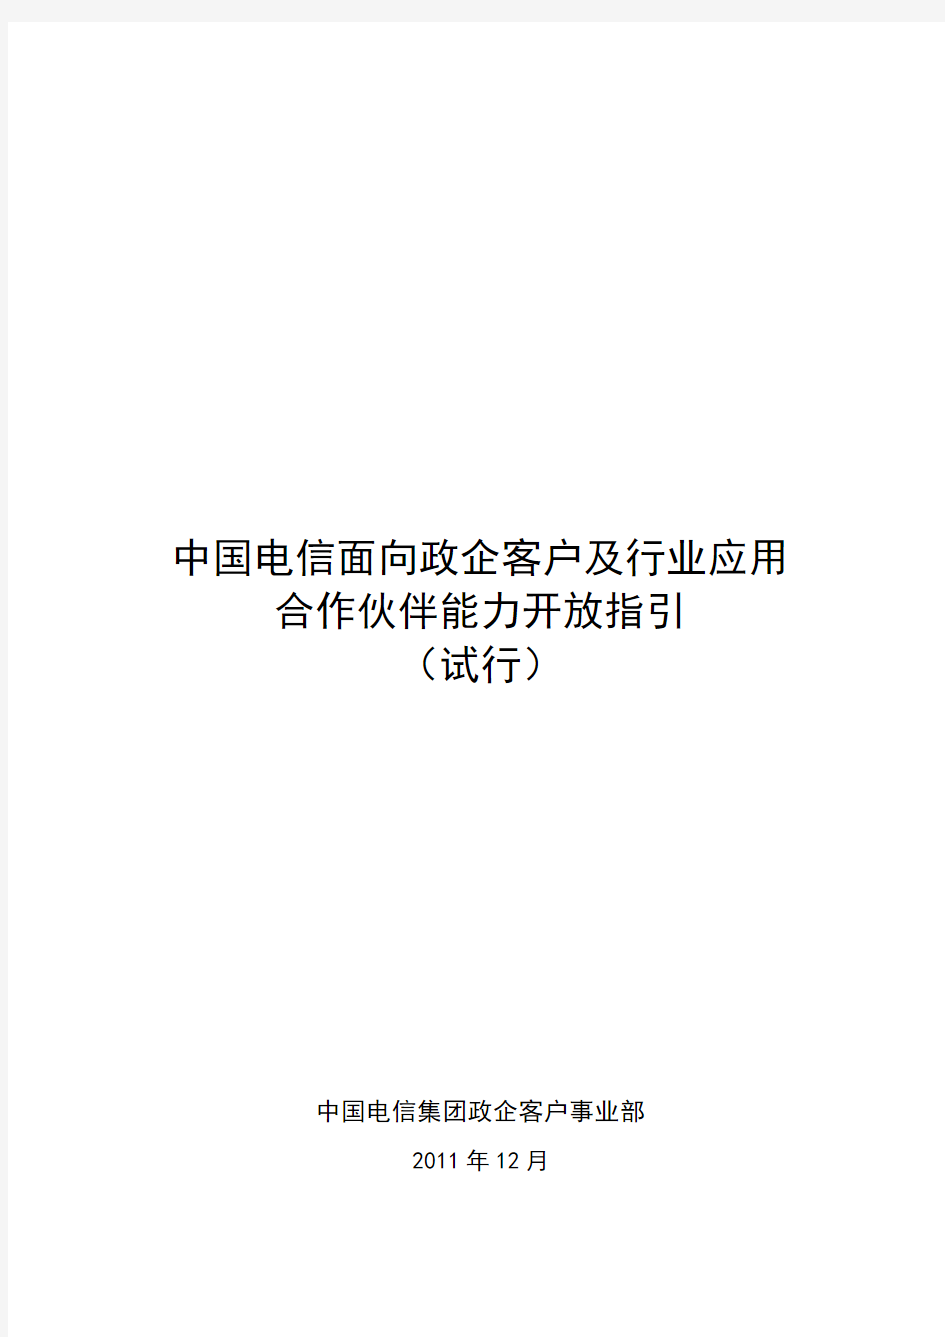 中国电信面向政企客户及行业应用合作伙伴能力开放指引(试行)